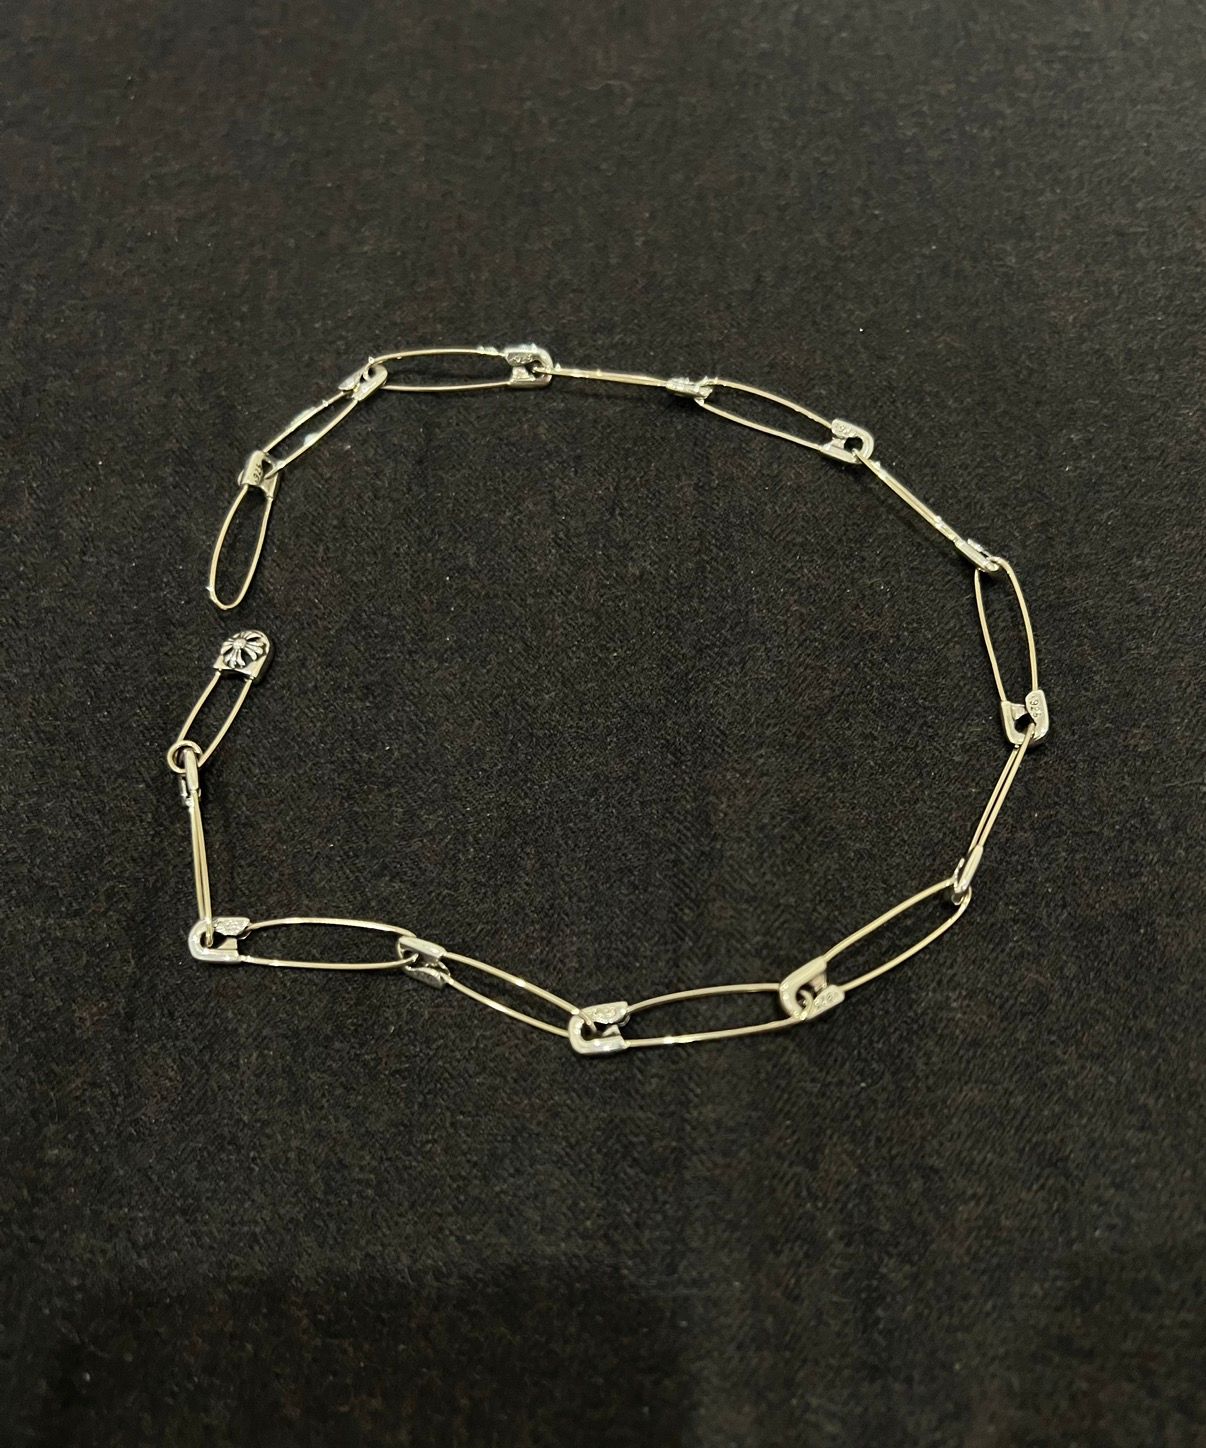 Safety pin necklace bracelet choker - 1